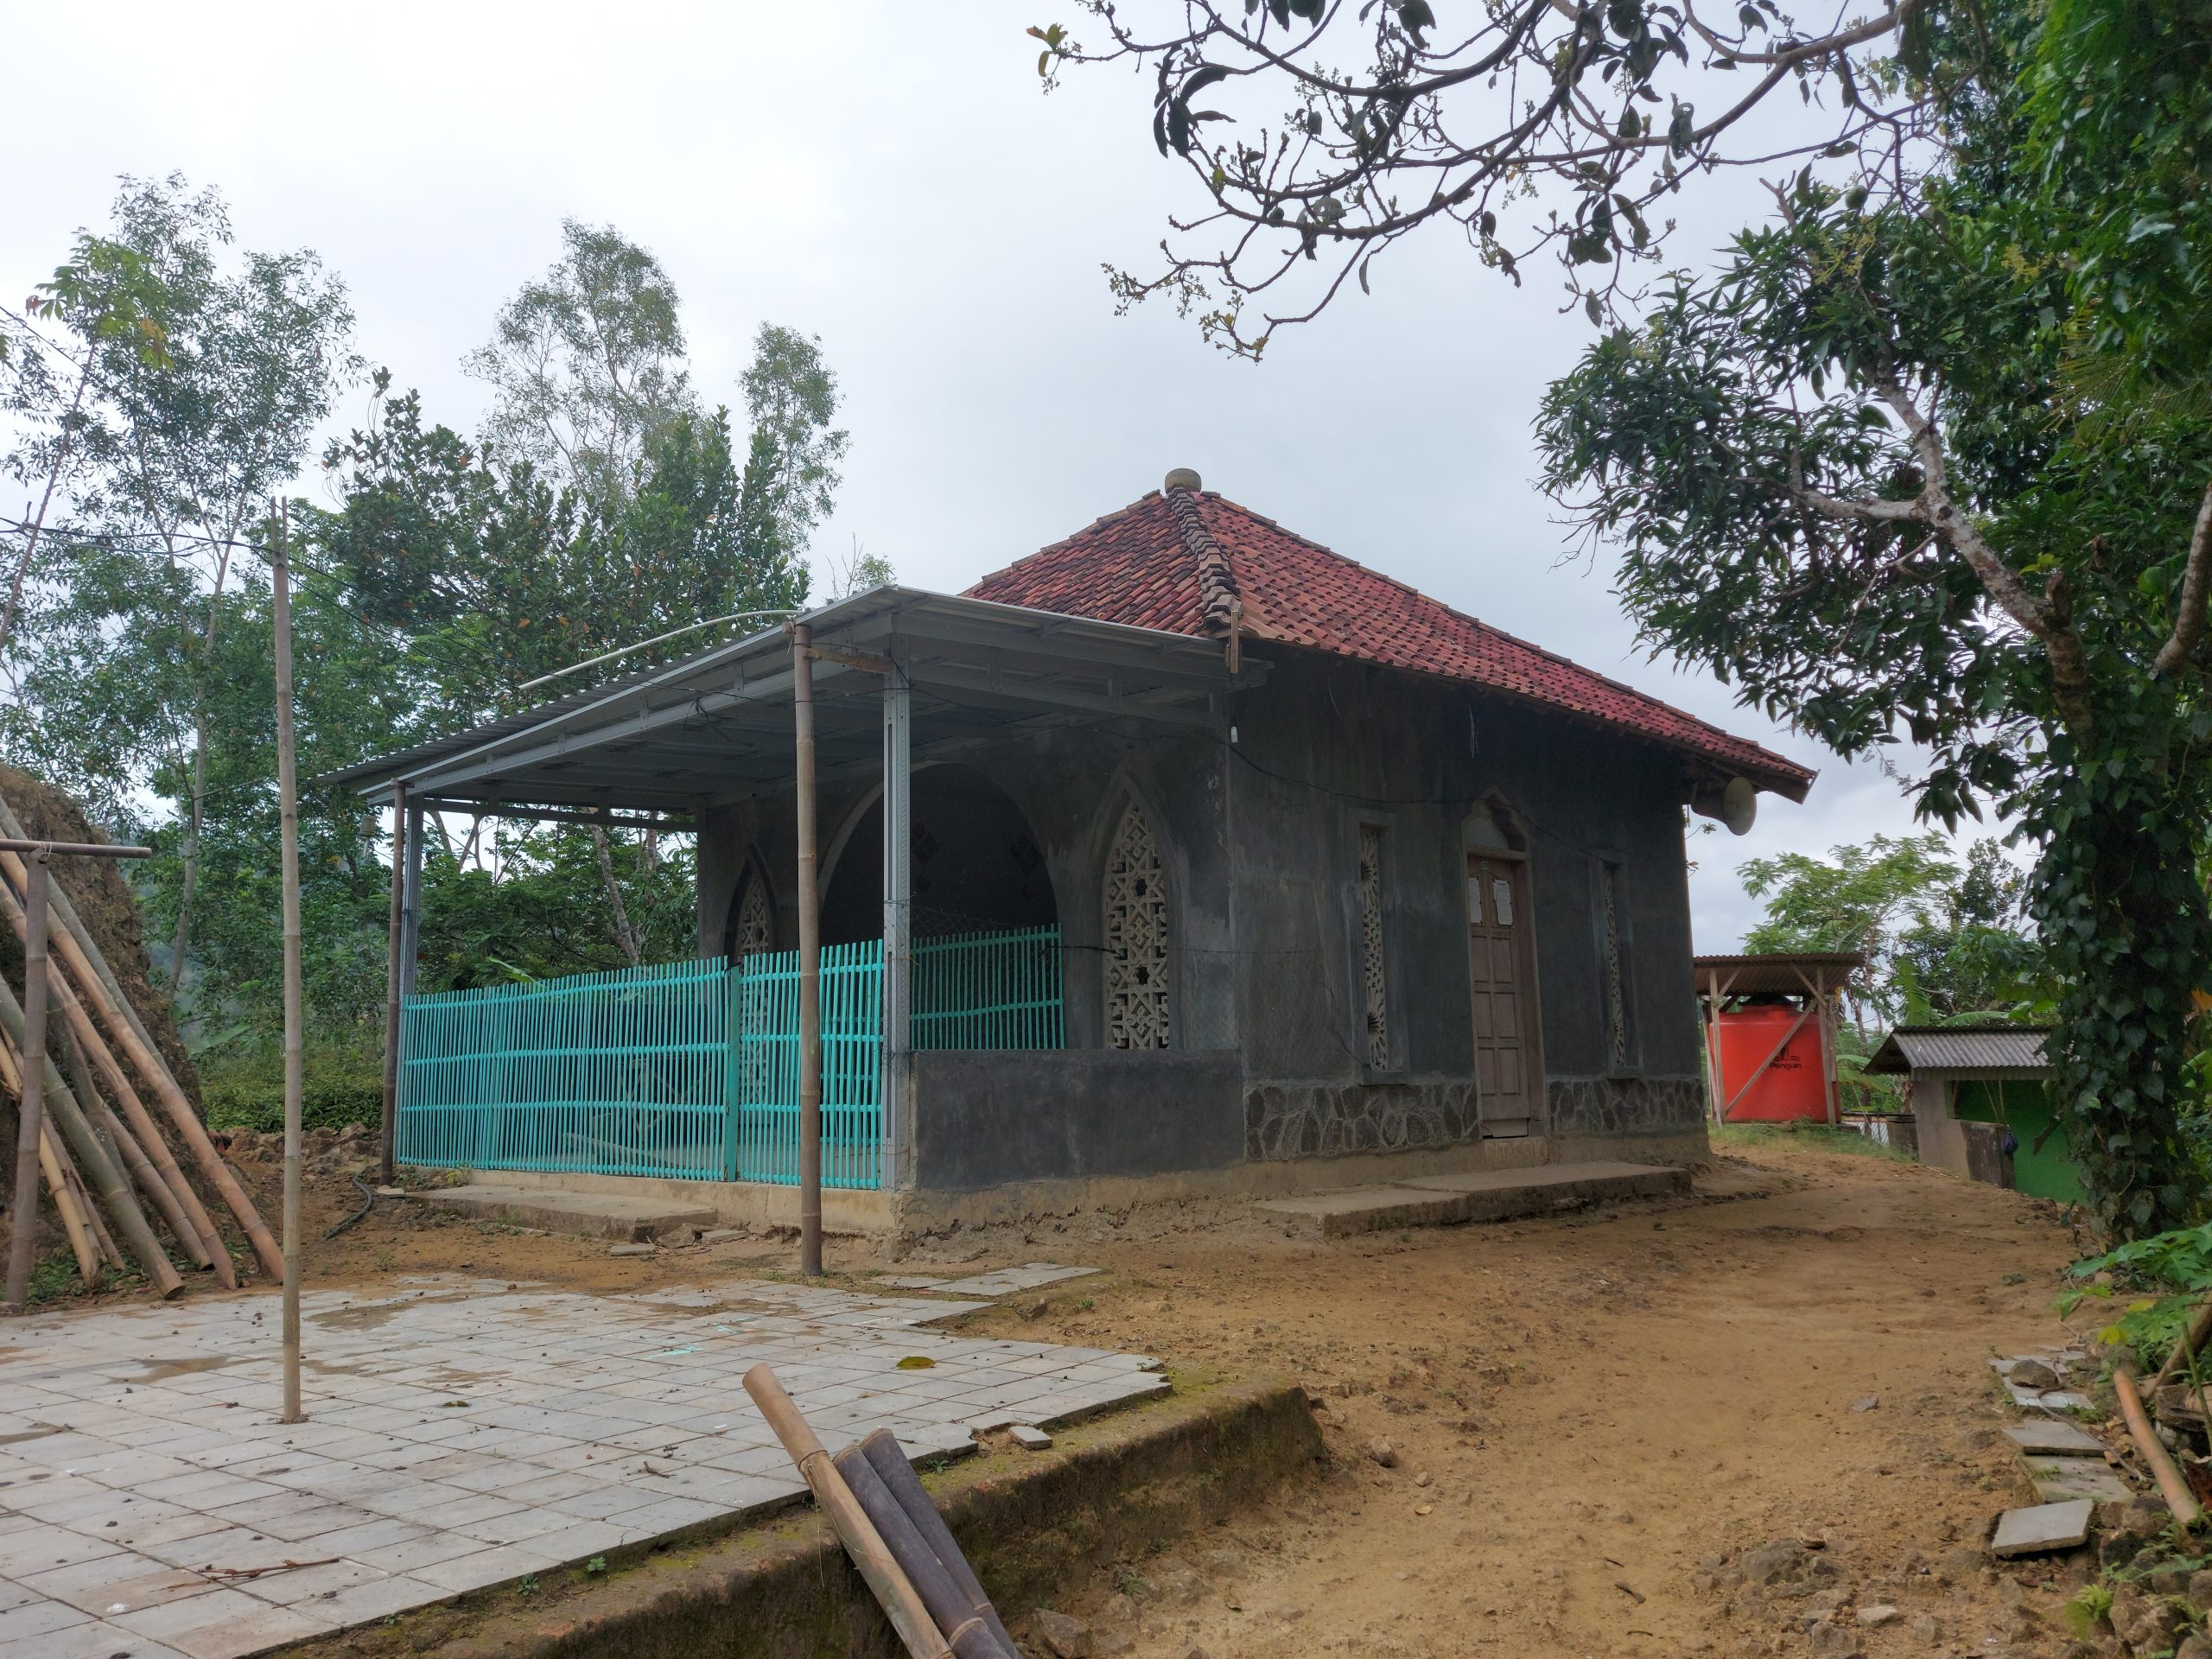 Usulan Lokasi Sedekah Air untuk Musholla Al Iman di Lingkungan Nggadak, Dusun Kampir, Desa Borang, Kecamatan Arjosari, Pacitan, Jawa Timur